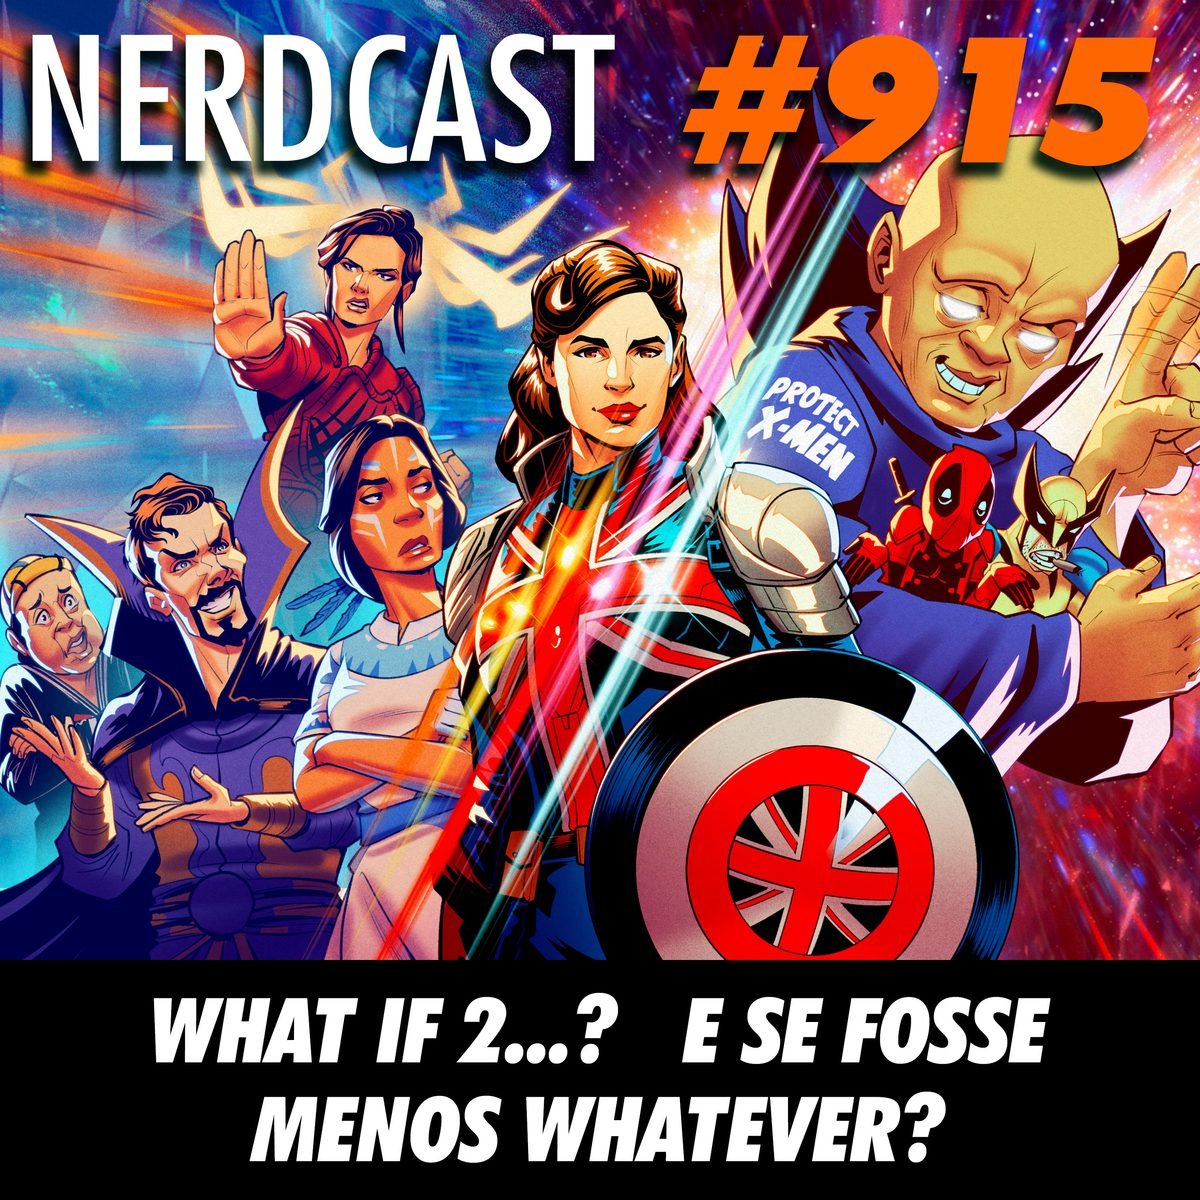 NerdCast 915 - What If…? E se fosse menos whatever?